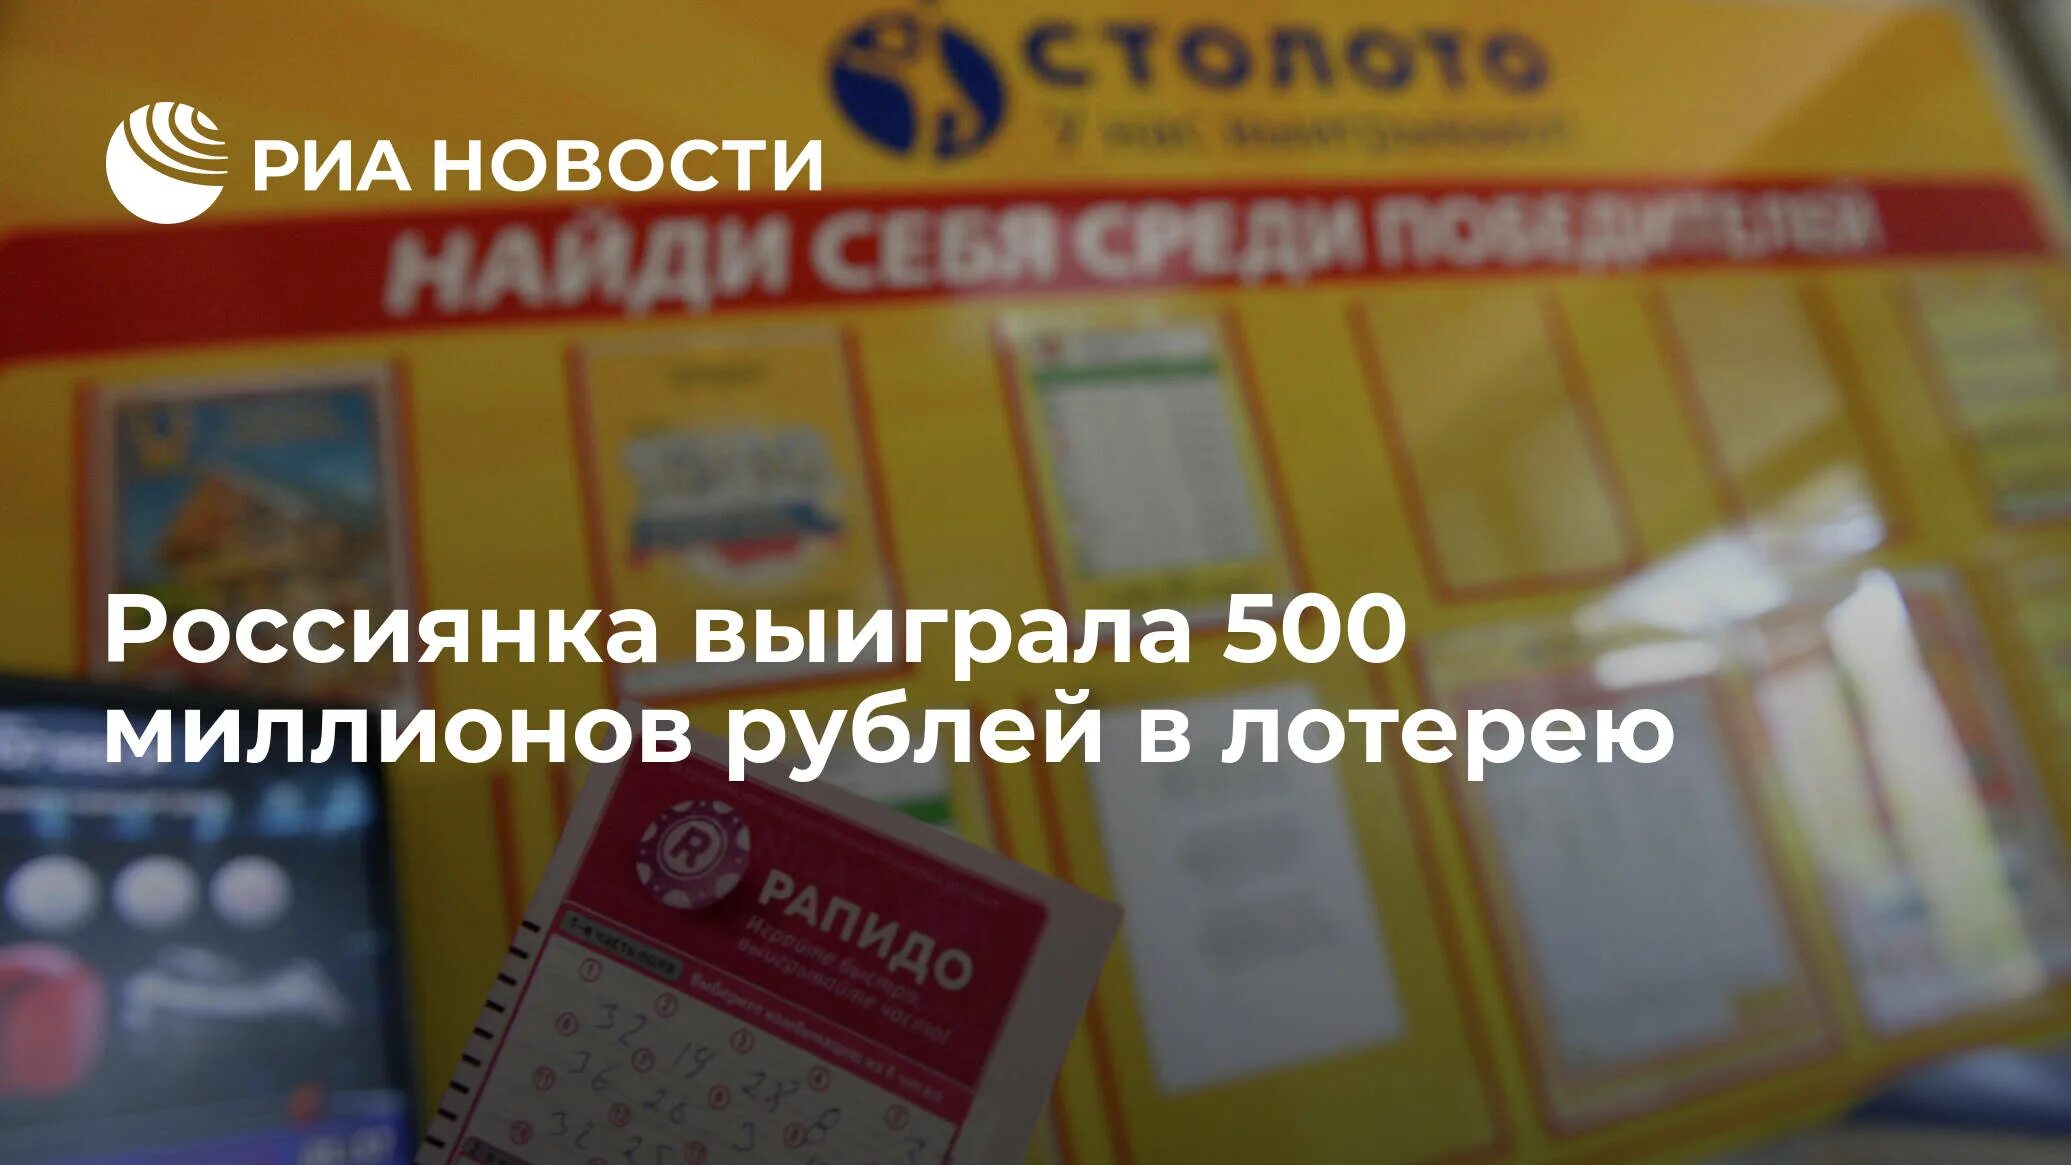 Лотерея 500 рублей. Выигрыш в лотерею 500 миллионов рублей. Выигрыш 20 миллионов рублей. Реклама лотерейных билетов. Победил в лотерее.